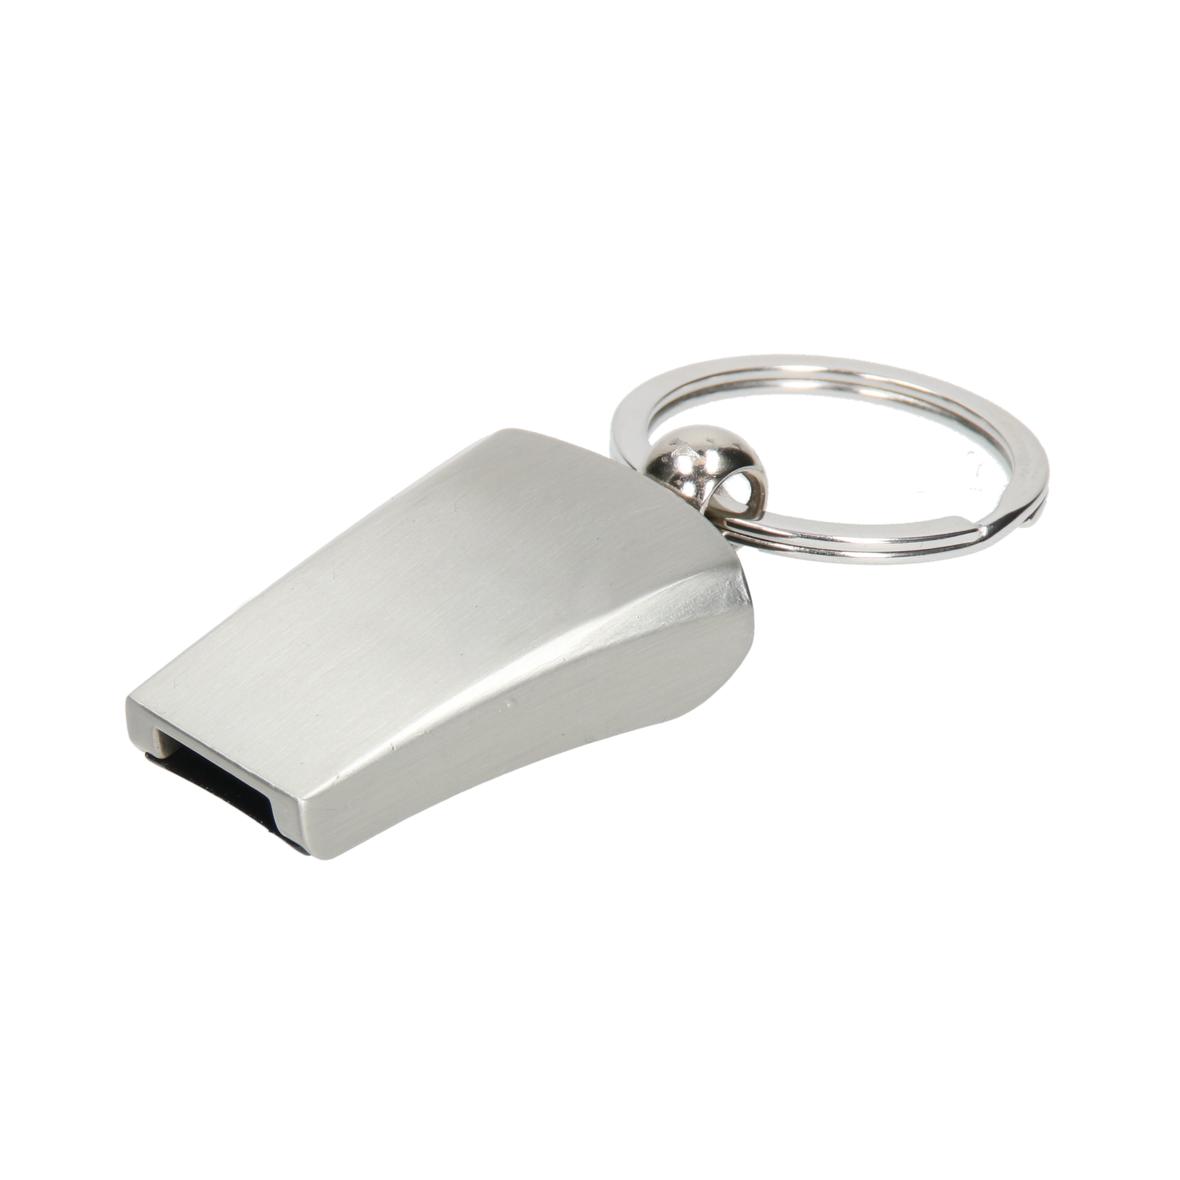 Metallic Key Ring Whistle - Kingham